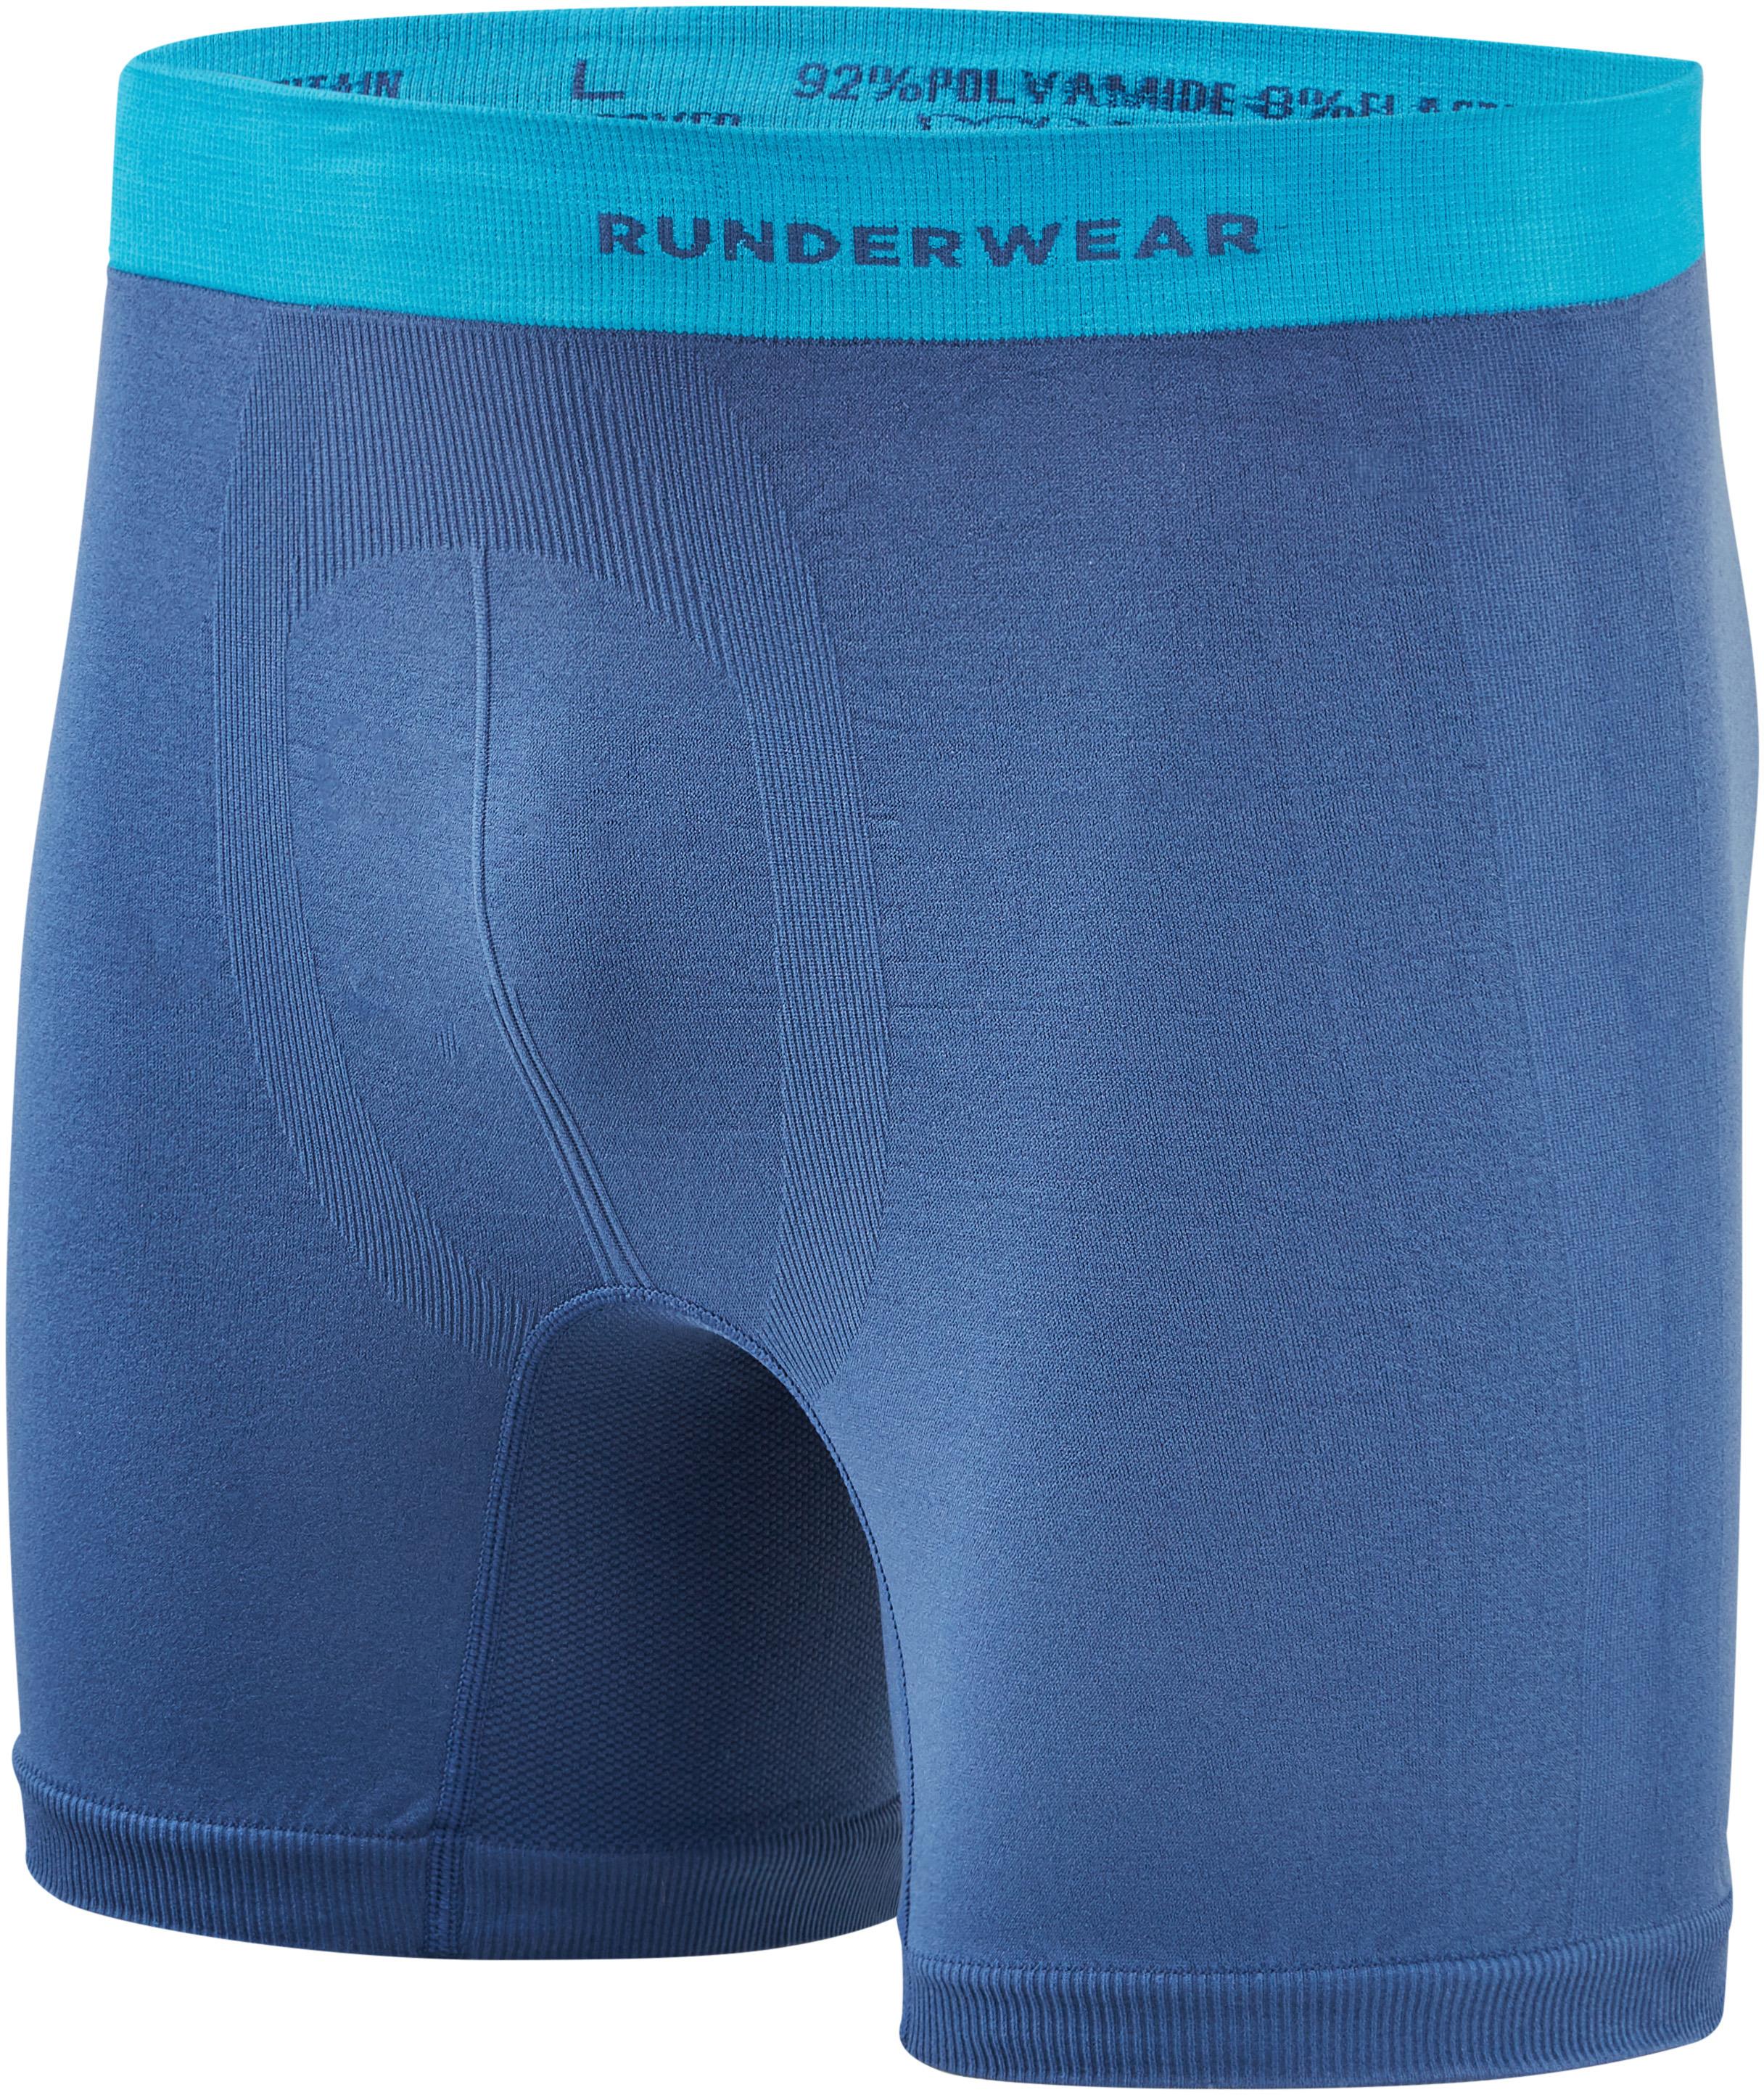 Runderwear Mens Boxer - Blue